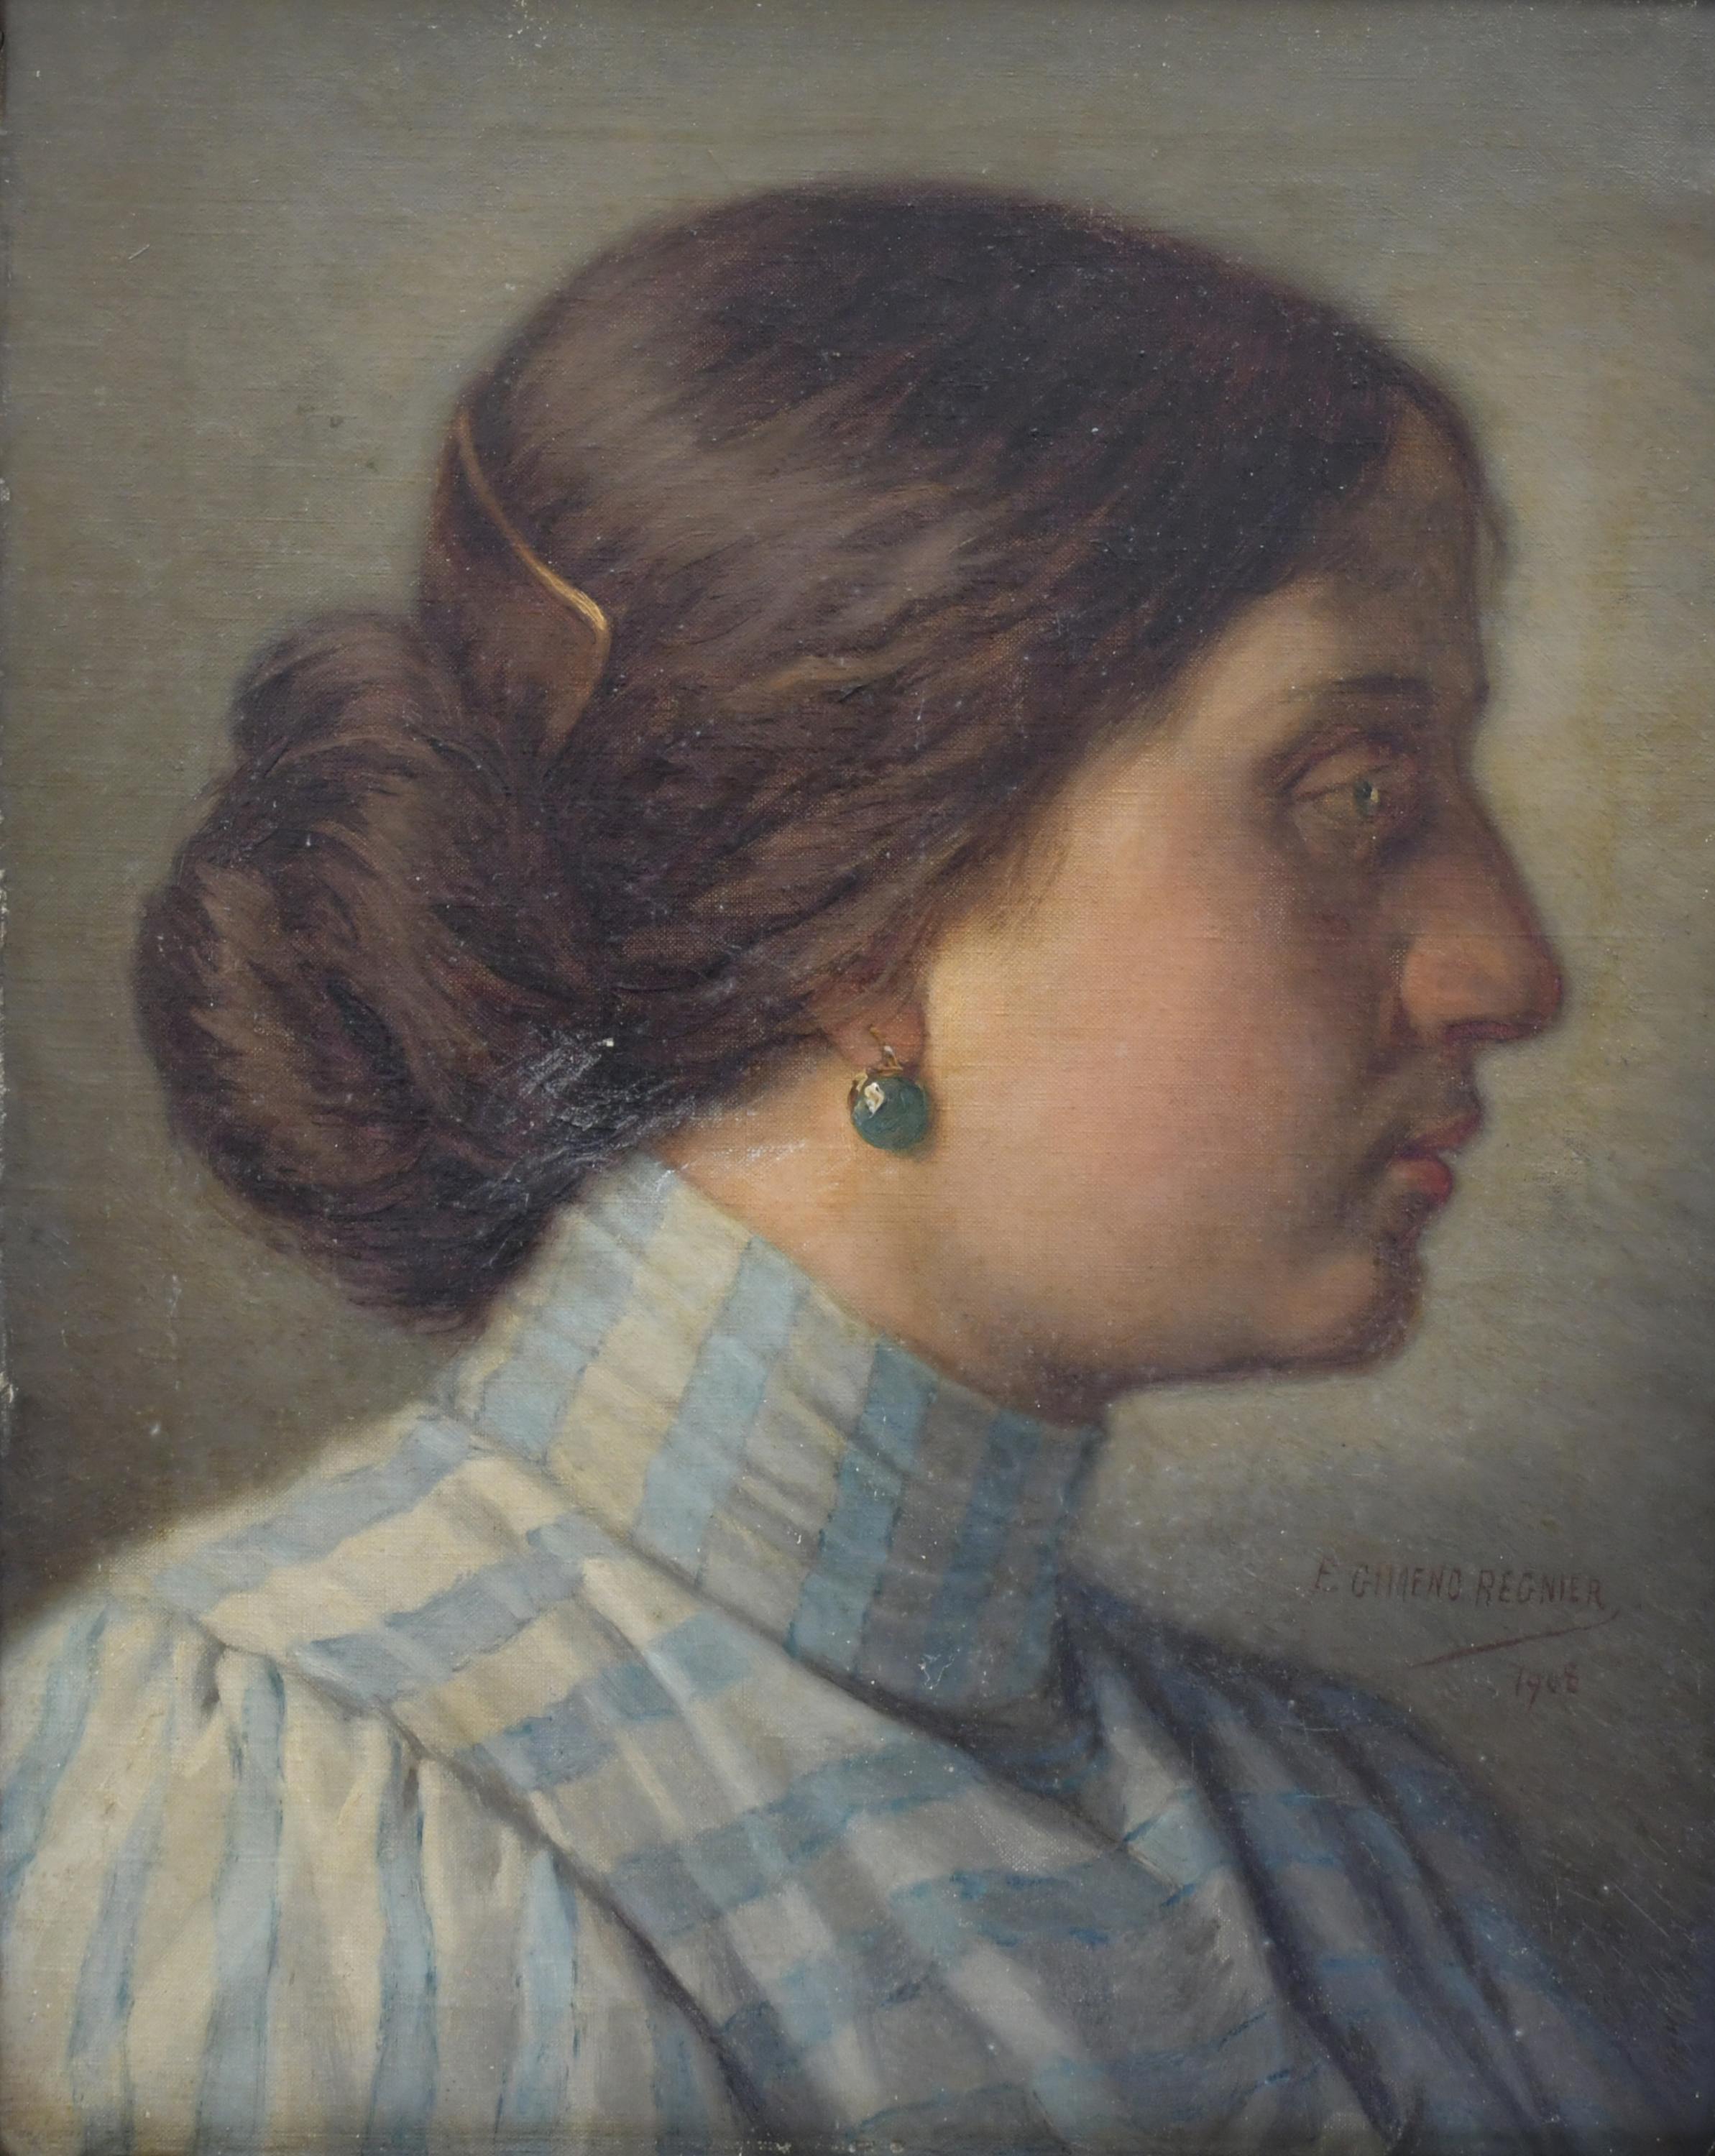 EUGENIO GIMENO REGNIER (1848-1920). "FEMALE PORTRAIT IN PRO